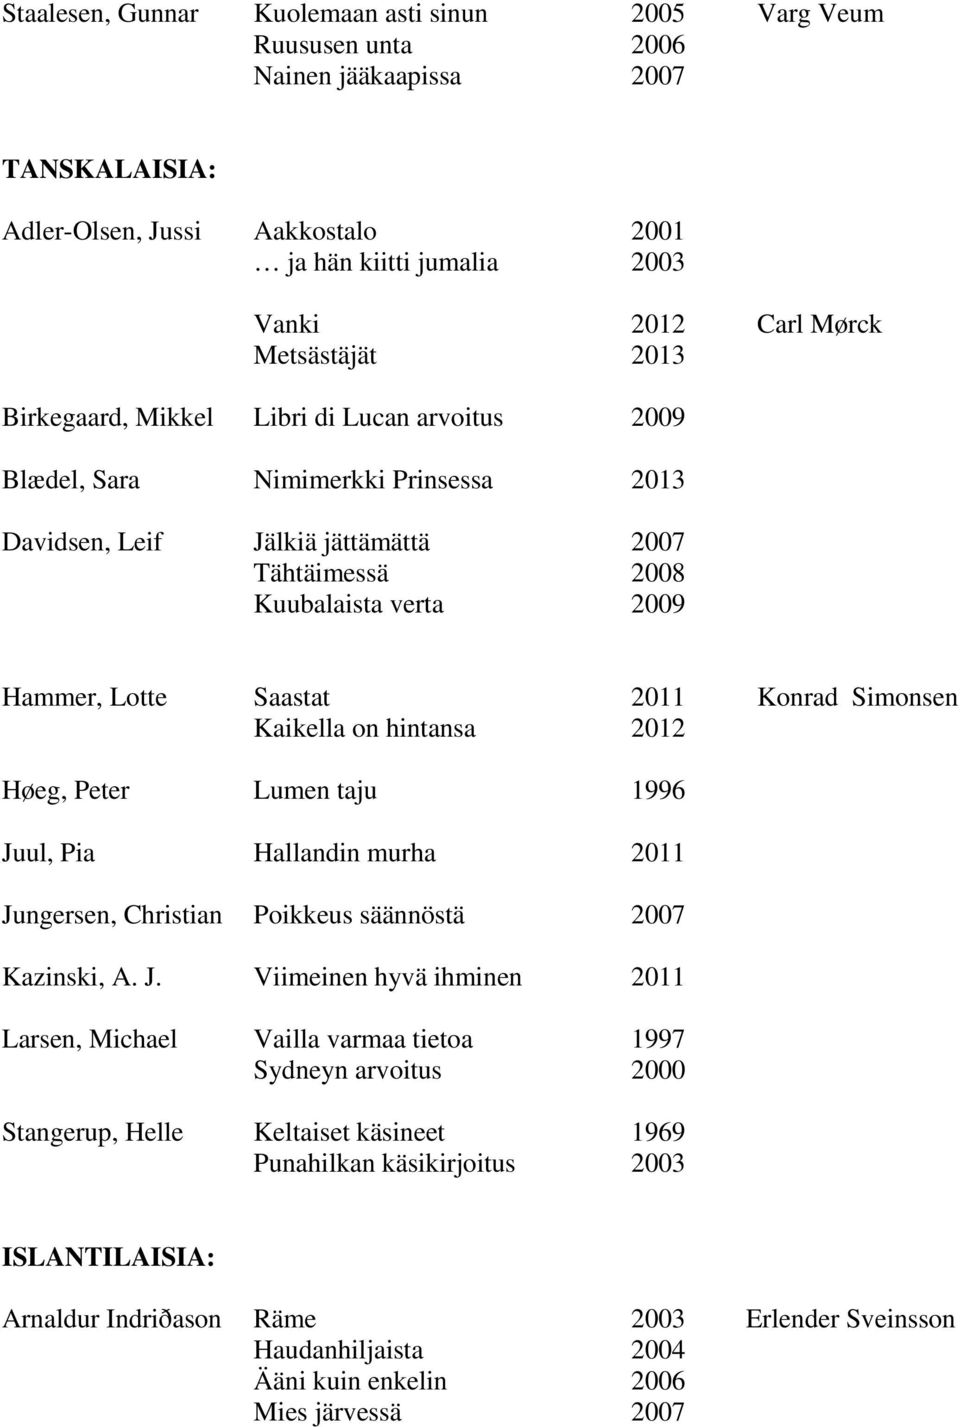 Saastat 2011 Konrad Simonsen Kaikella on hintansa 2012 Høeg, Peter Lumen taju 1996 Ju